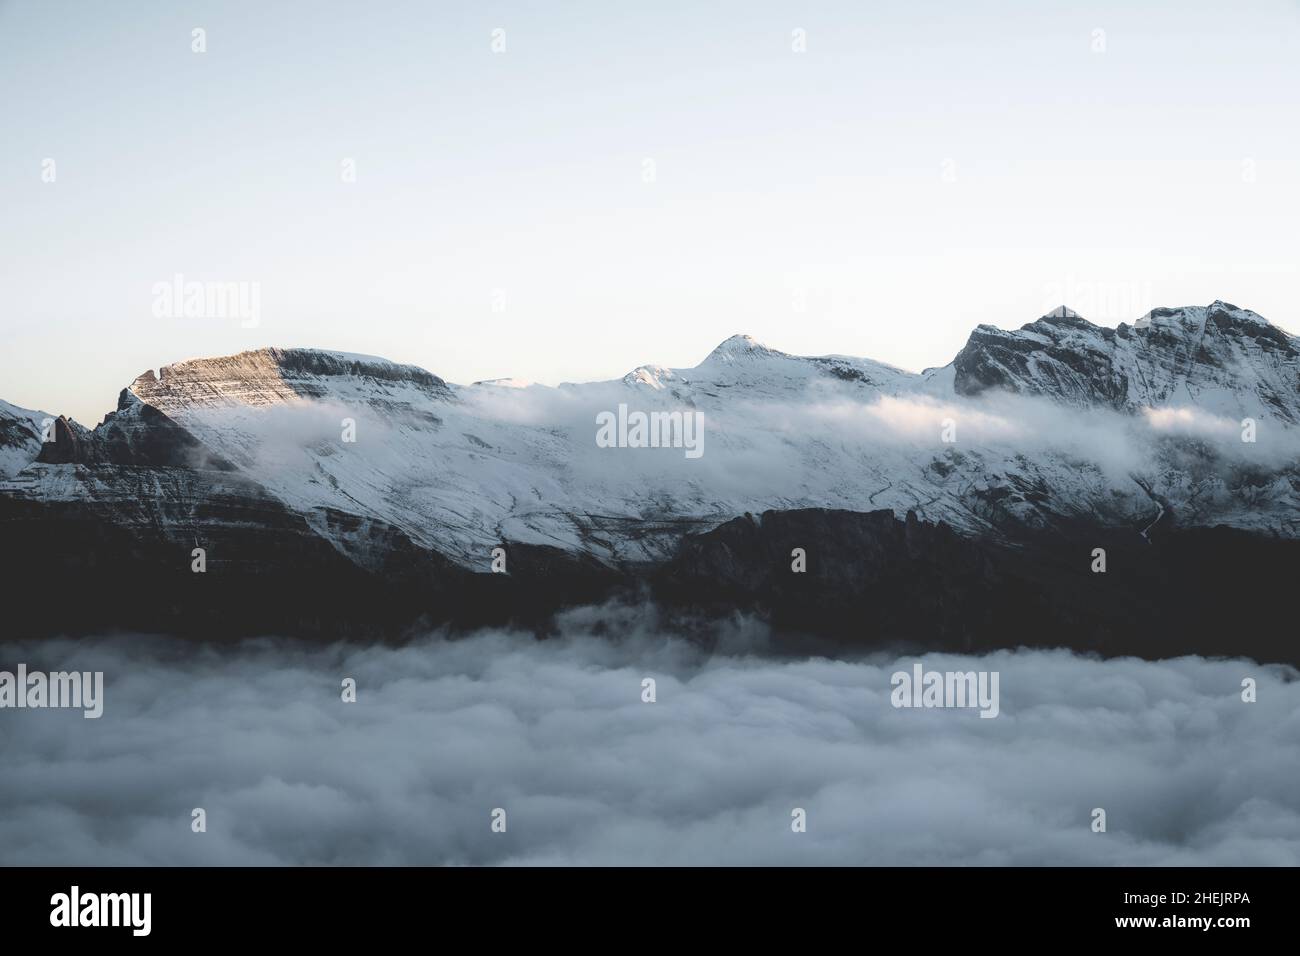 Niebla al amanecer que cubre el pico de la montaña Faulhorn en las nubes, Mannlichen, región de Jungfrau, cantón de Berna, Suiza Foto de stock